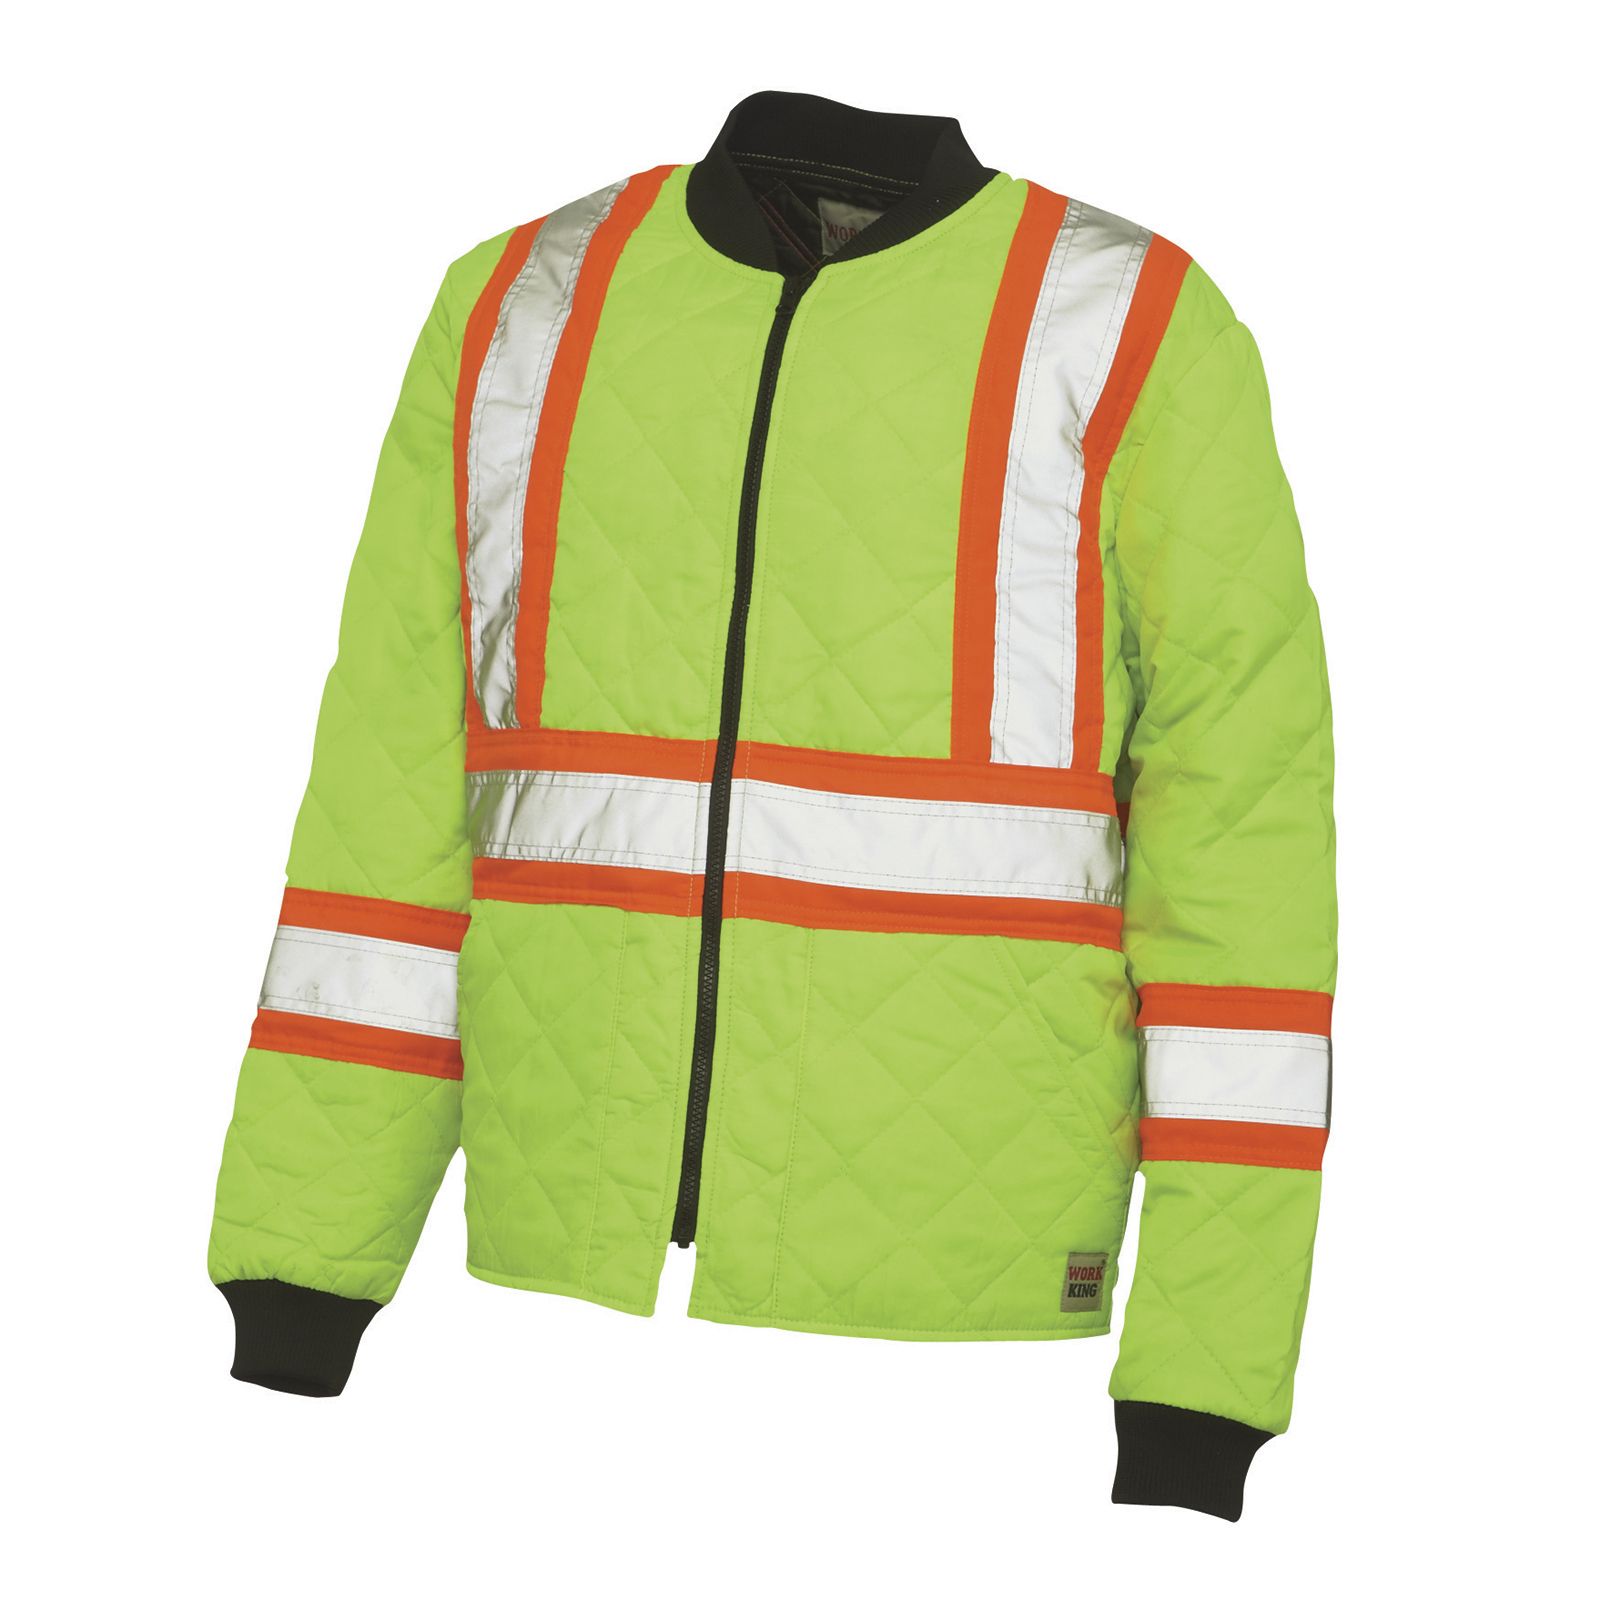 Work King Safety Hi Vis Quilted Safety Jacket